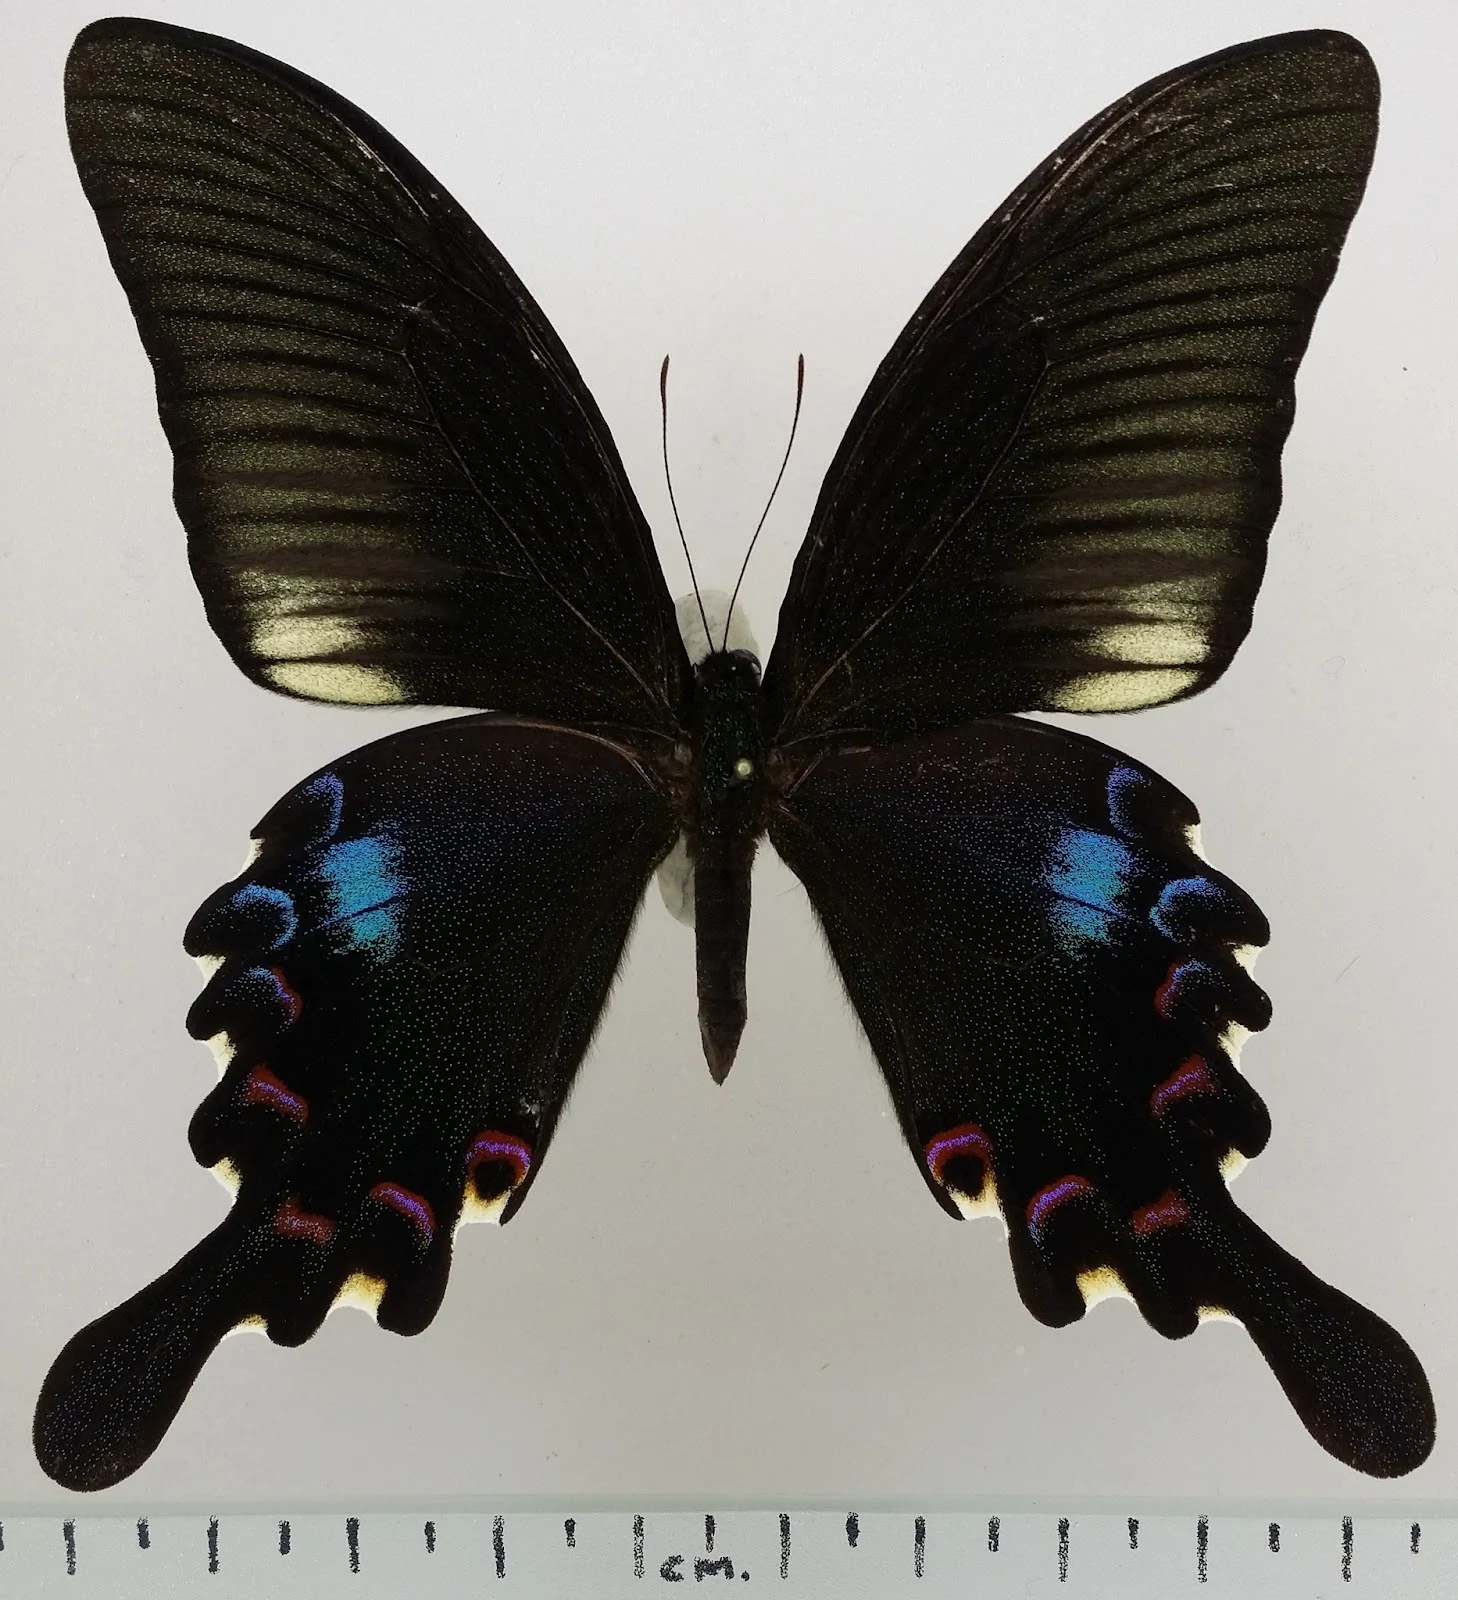 ผีเสื้อหางติ่งแววมยุรา Papilio bianor subsp. stockleyi